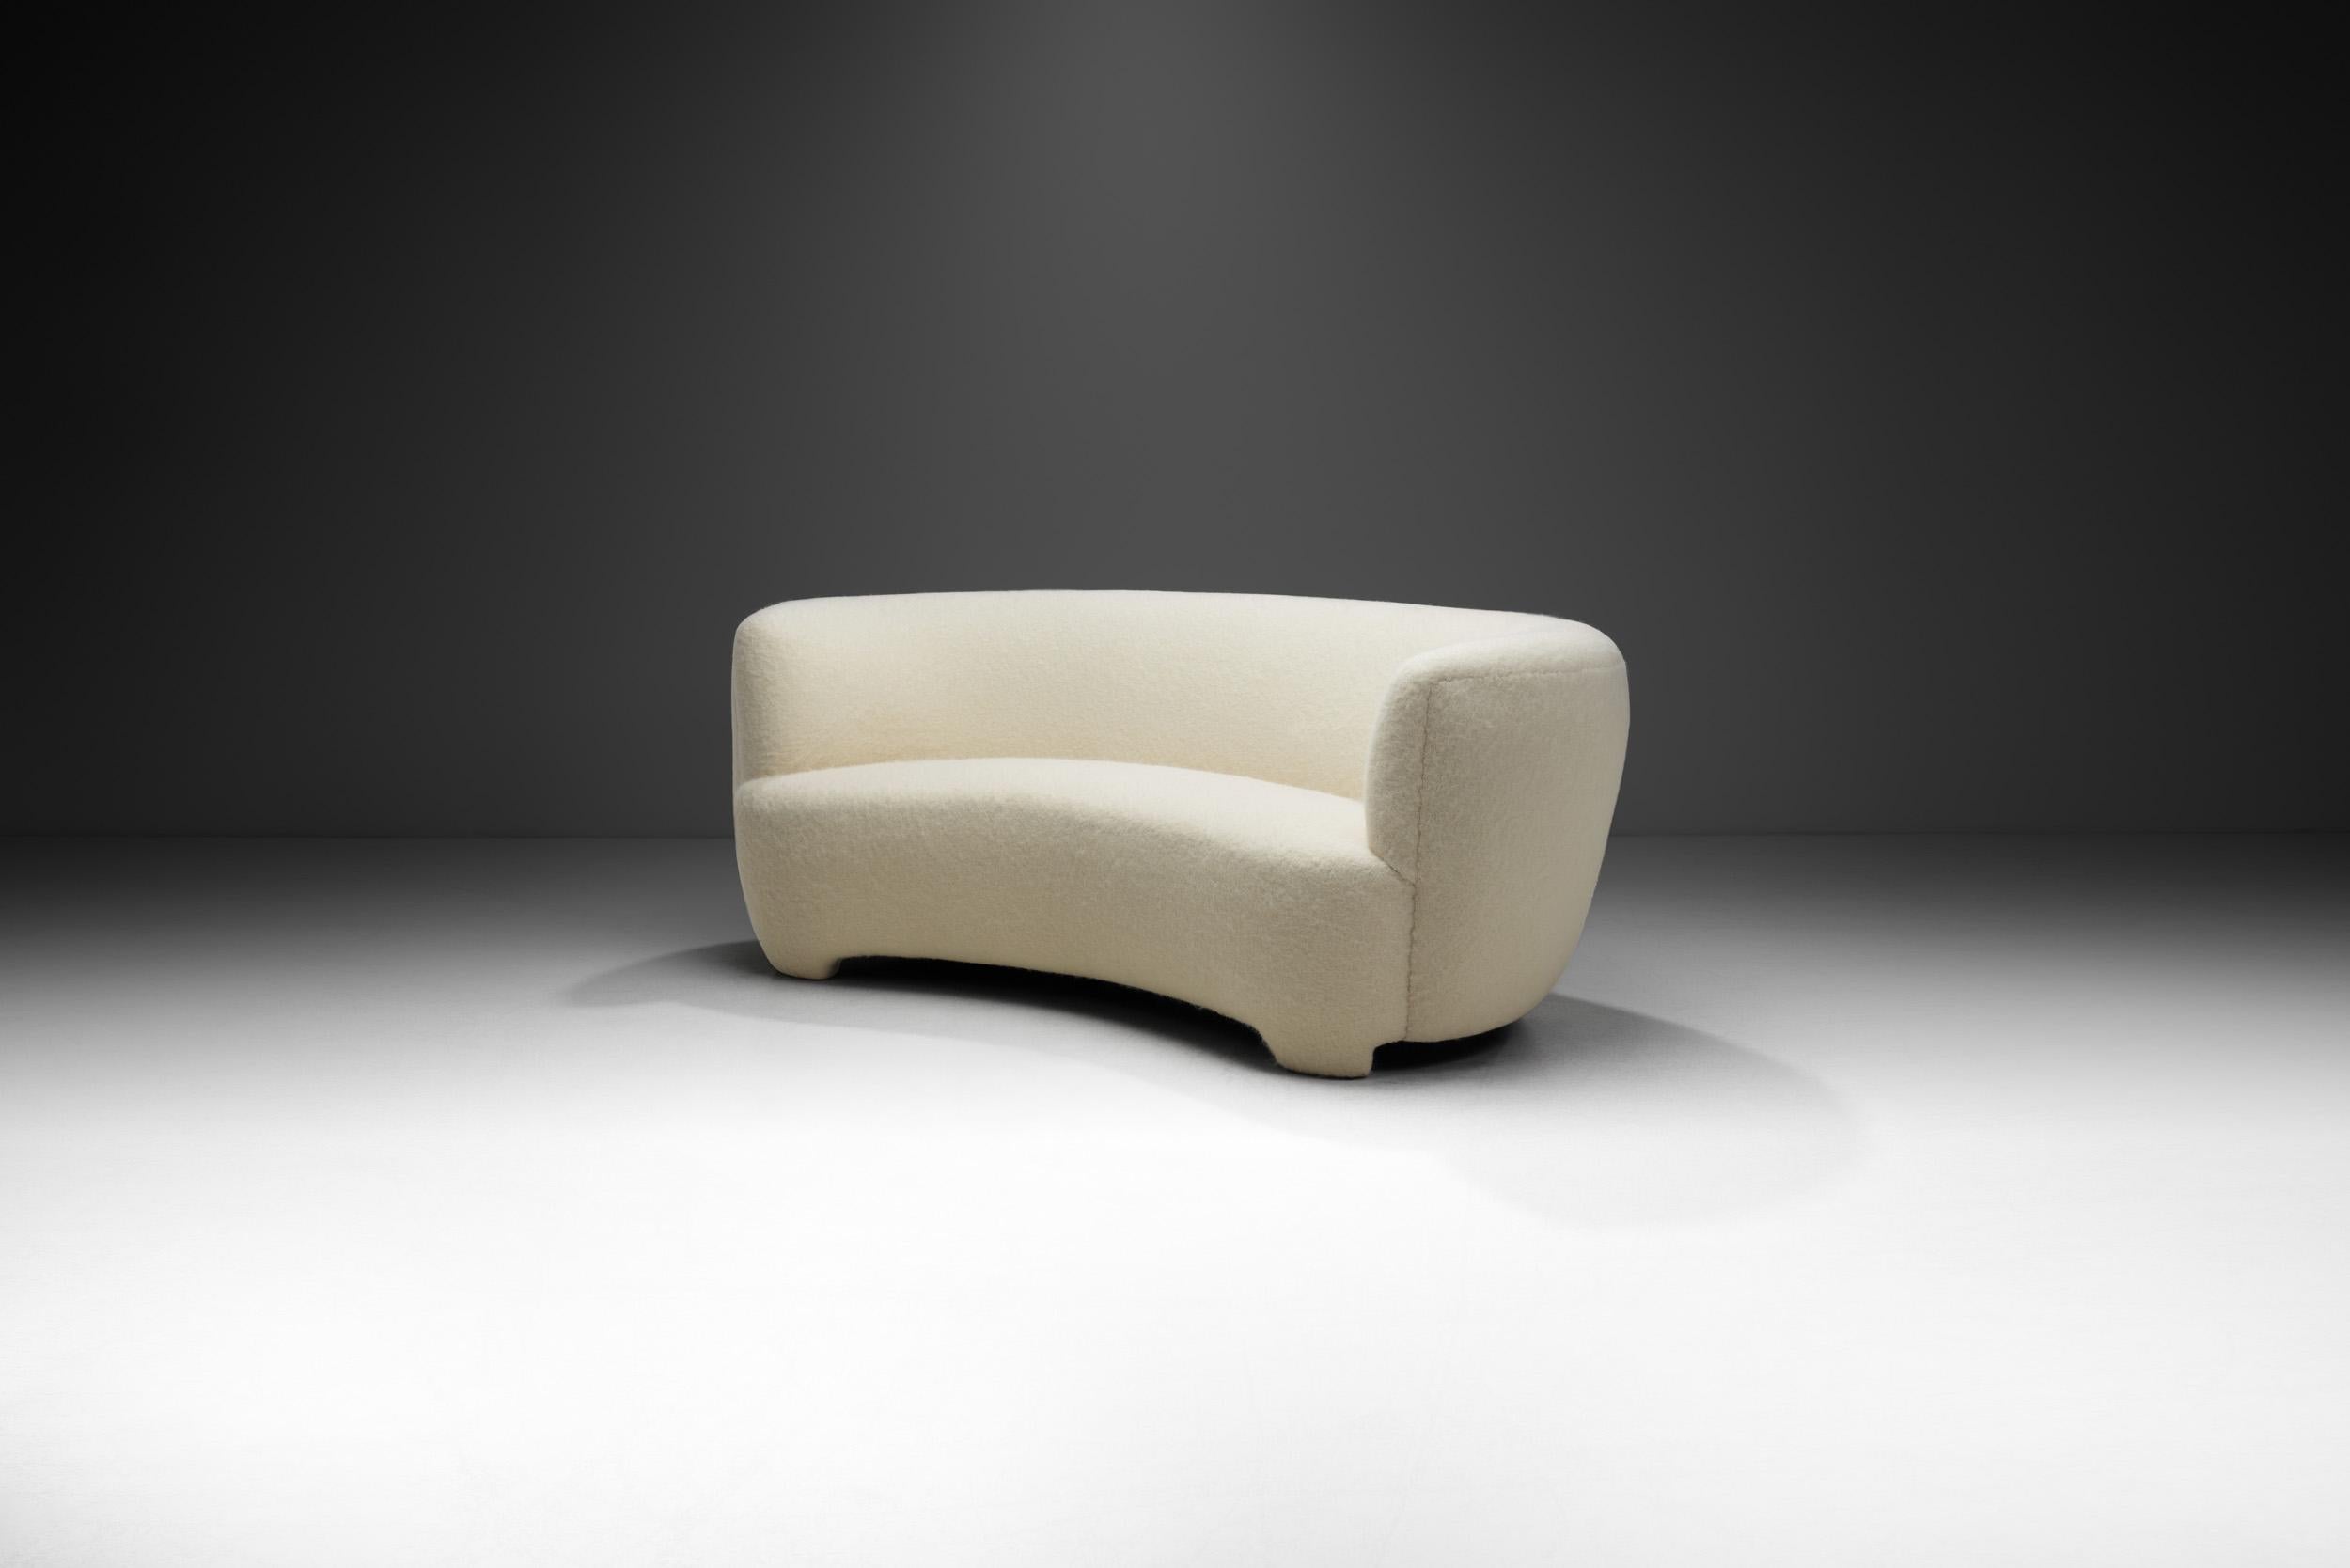 Der moderne Stil der Jahrhundertmitte ist nüchtern und sachlich, genau wie der geradlinige Einrichtungsstil, der sich durch Funktionalität, Leichtigkeit und moderne Einfachheit auszeichnet. Dieses dreisitzige Sofa mit seiner perfekt ausbalancierten